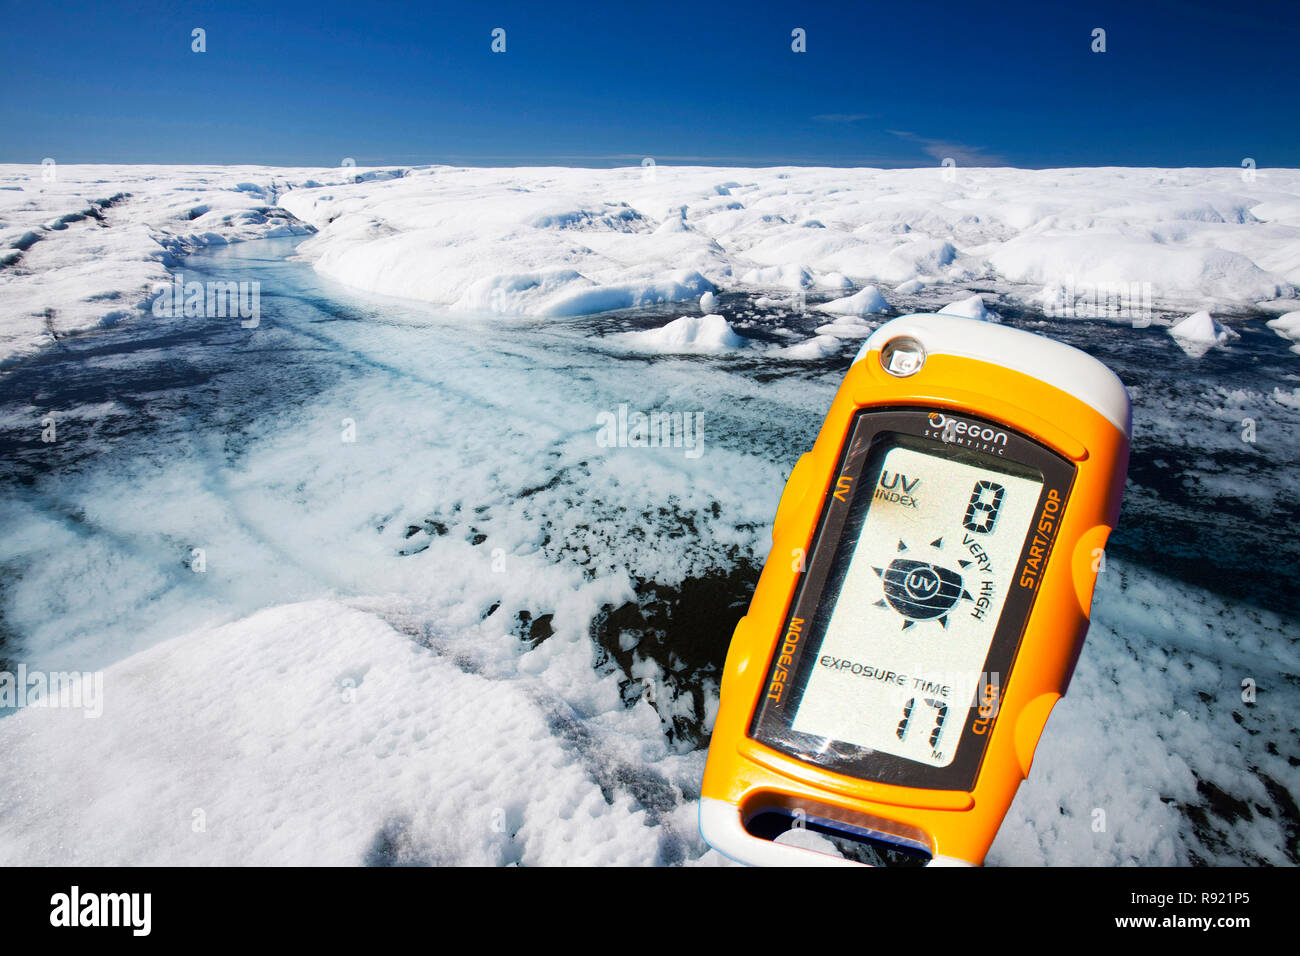 Schmelzwasser auf dem Grönländischen Eisschild in der Nähe von Camp Victor nördlich von Ilulissat. Der Grönländische Eisschild ist die größte Eisfläche außerhalb der Antarktis. Temperatues haben von neun Grad Fahrenheit in Grönland in den letzten 60 Jahren durch den Menschen verursachte Klimawandel gestiegen. Dies verursacht das Eis mit beispielloser Preise, ist zutiefst beunruhigend, als das Eis genug Wasser globalen Meeresspiegel um 9 Meter zu erhöhen enthält zu schmelzen. Stockfoto